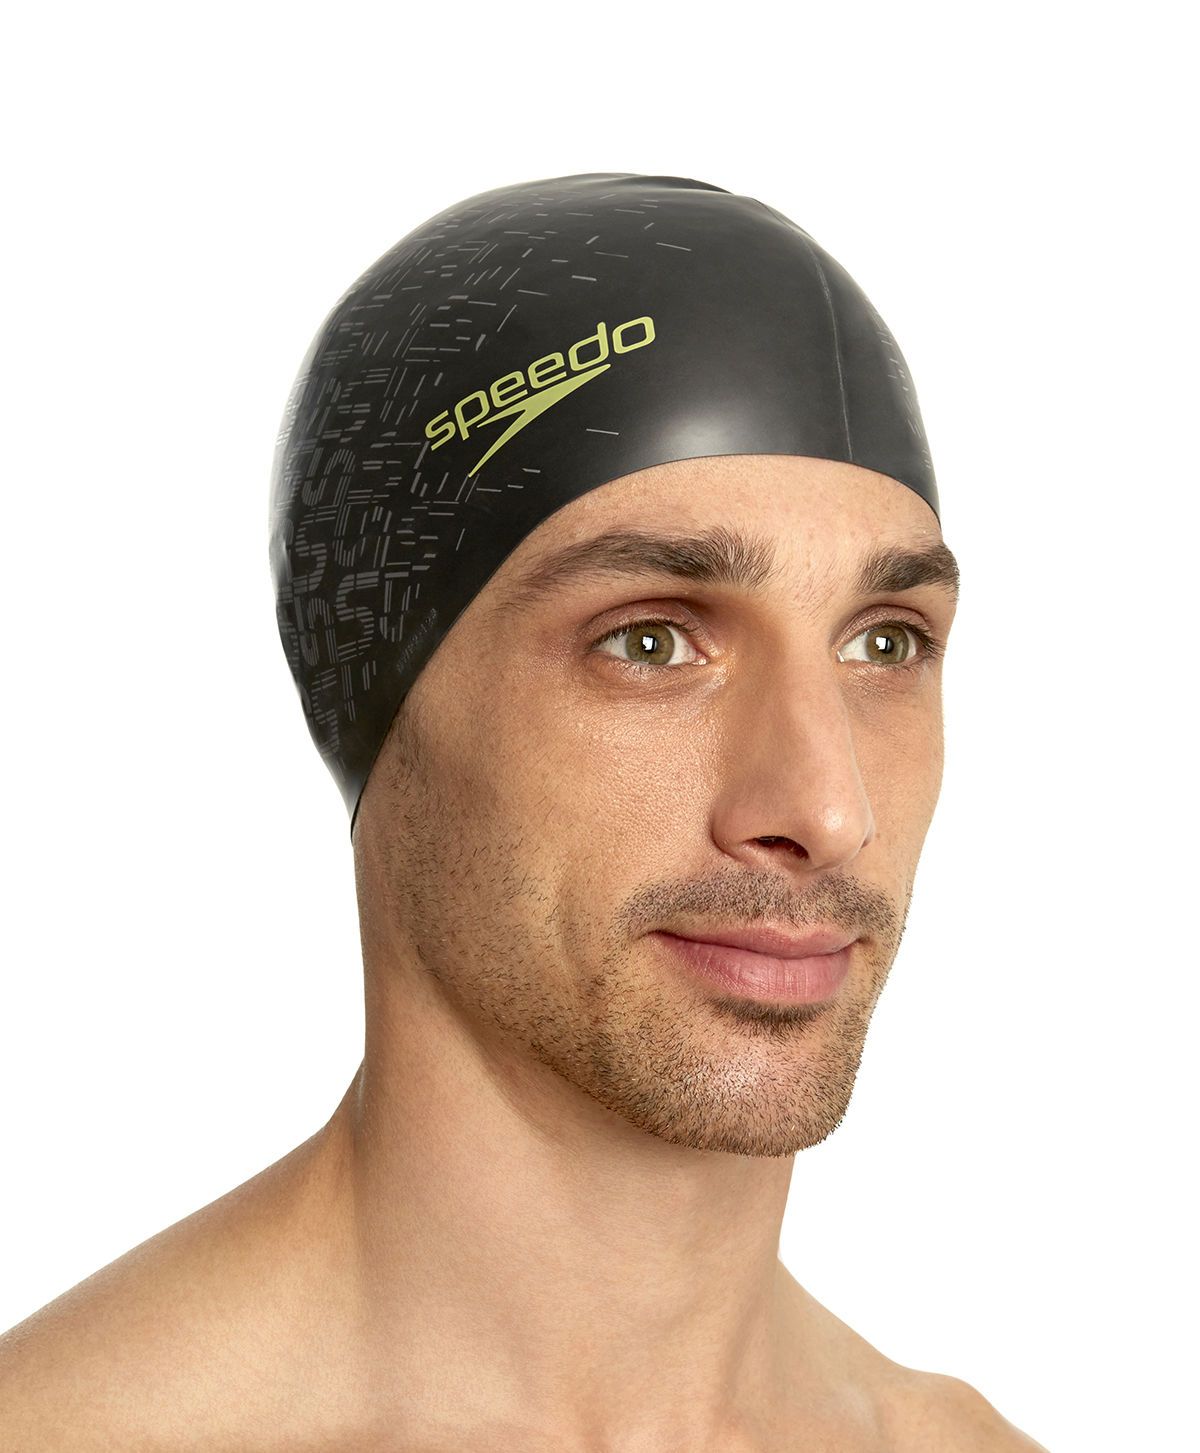  Speedo - Nón Bơi Người Lớn Reversible Monogram Silicone (Đen) Chống Thấm Nước 